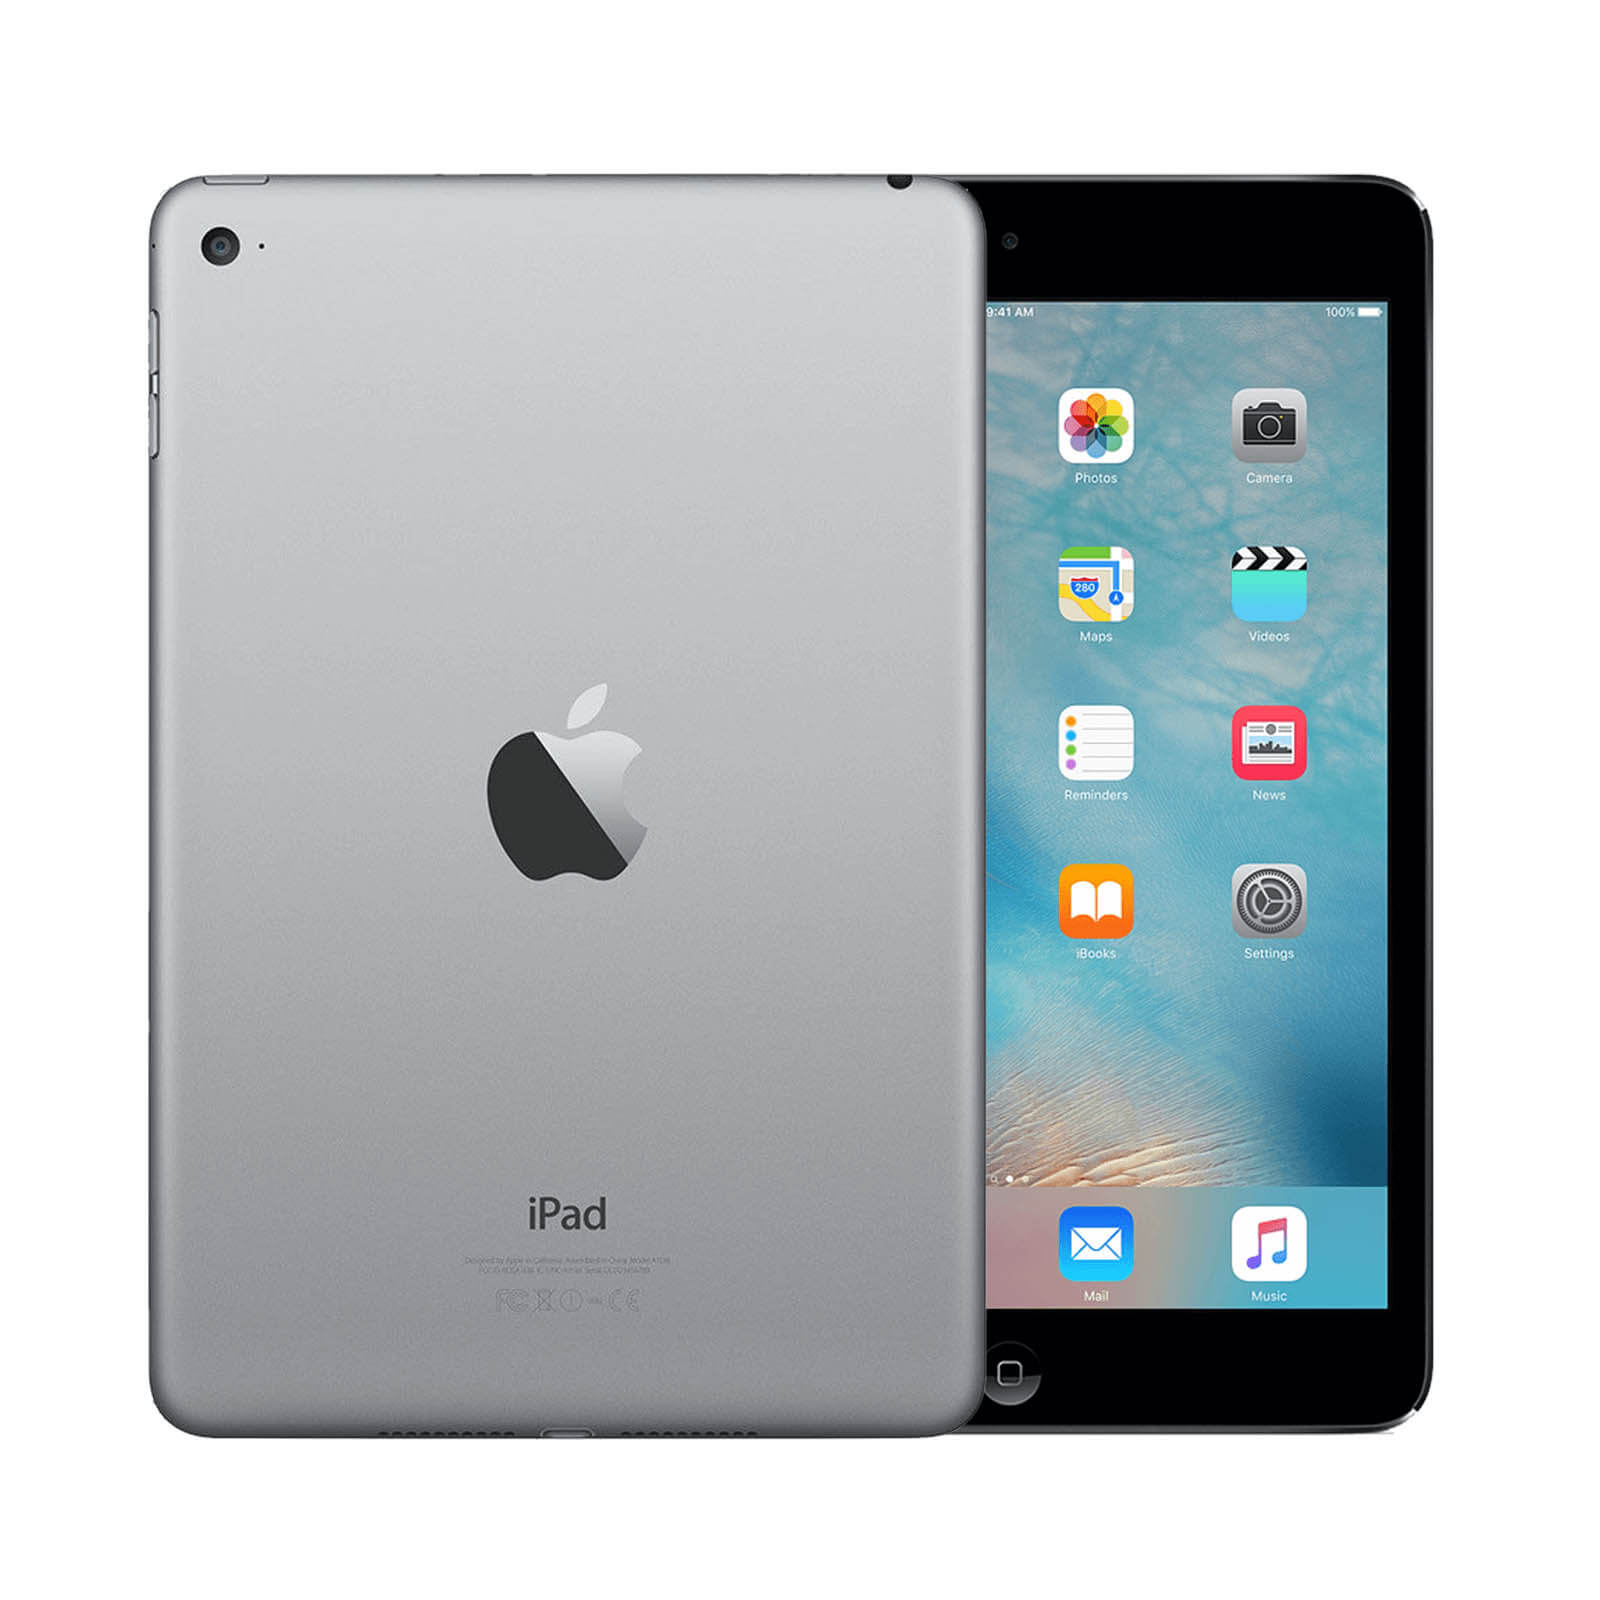 Apple iPad Mini 4 32GB Space Grey WiFi – Loop Mobile - UK